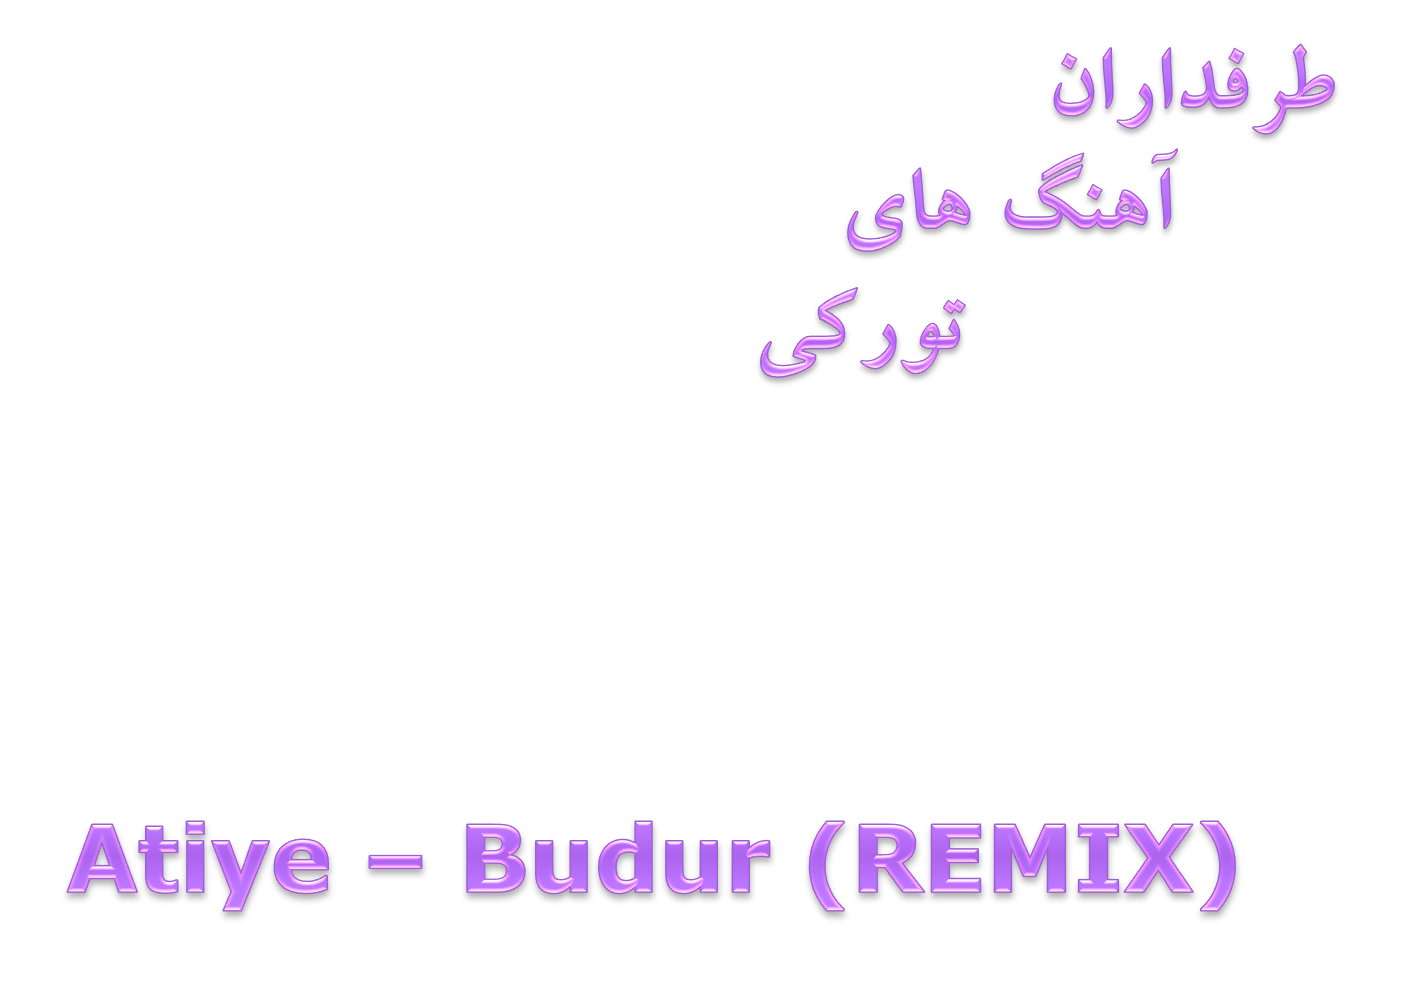 دانلود آهنگ بسیار زیبا و میکس Atiye بنام Budur Remix